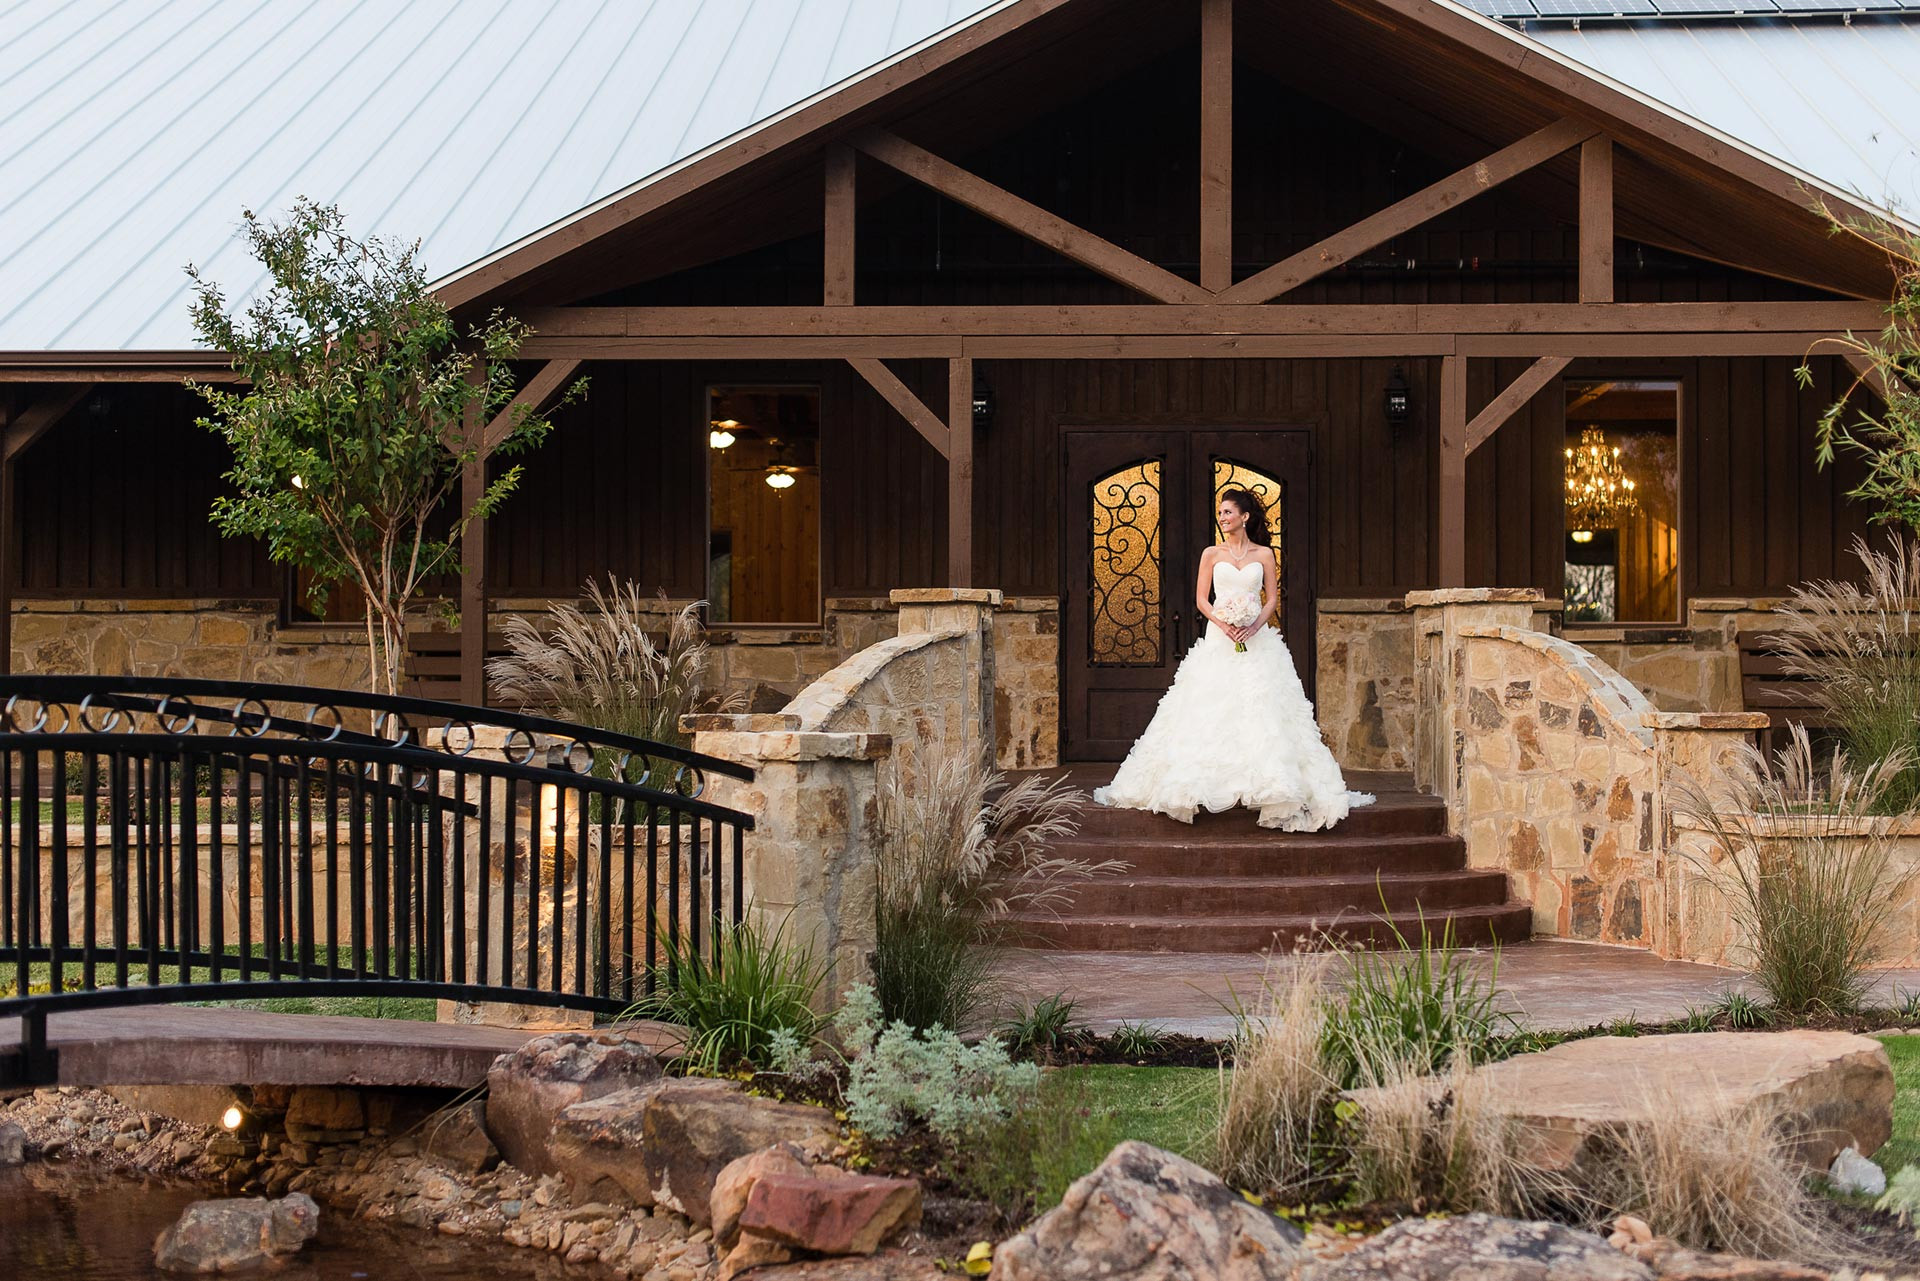 Wedding Venues In Oklahoma
 Wedding Venue Locations in Texas and Oklahoma